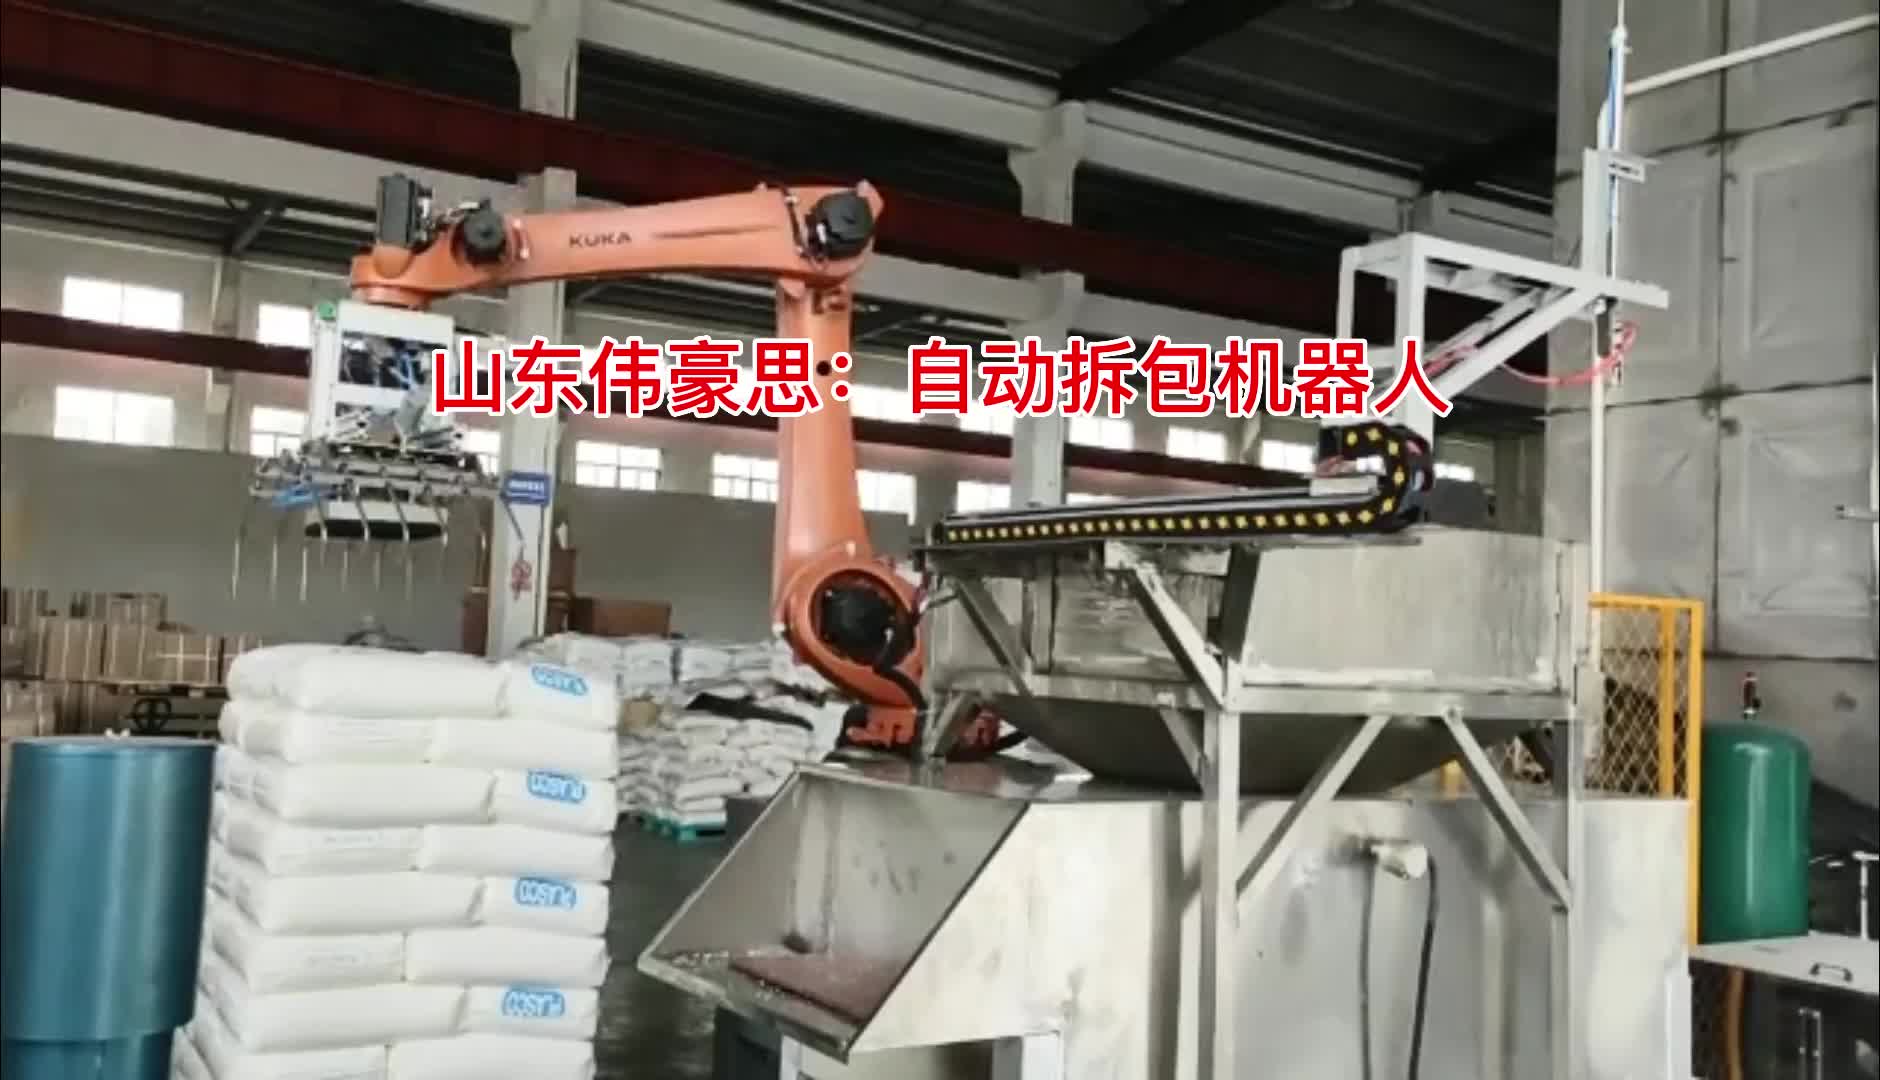 氯化钙机器人拆包现场 全自动破袋输送装置
